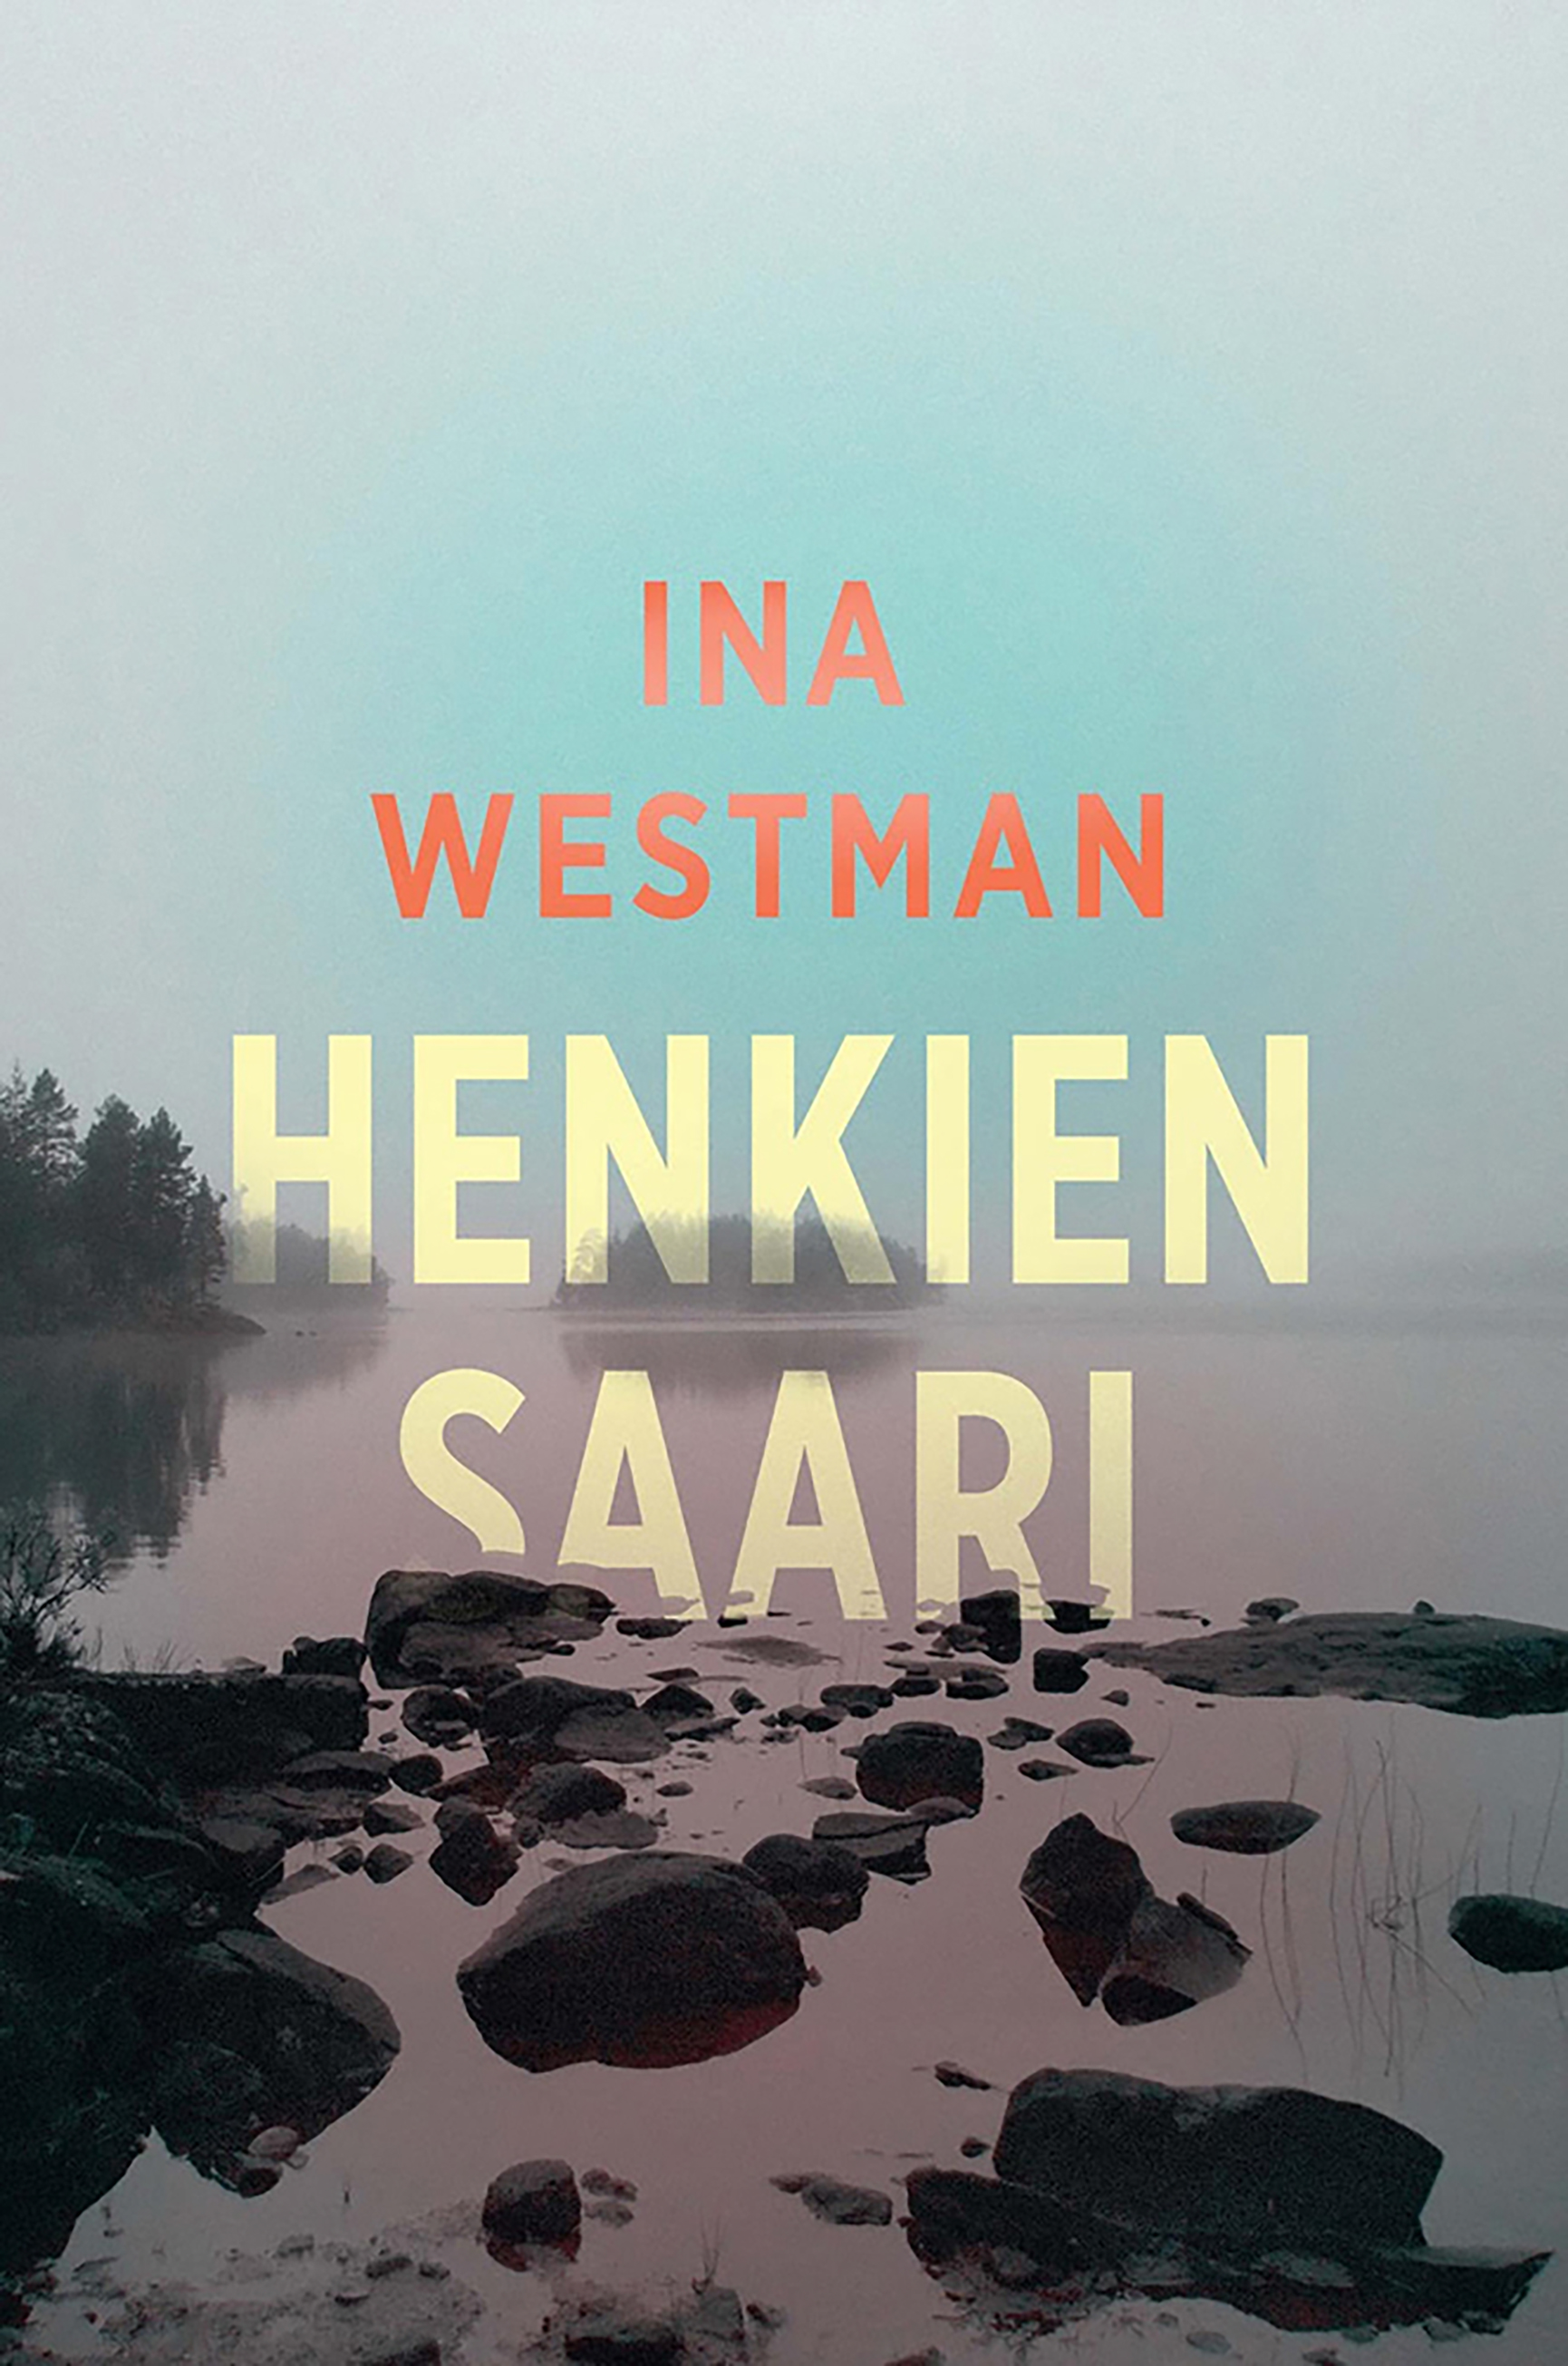 Westman, Ina - Henkien saari, ebook